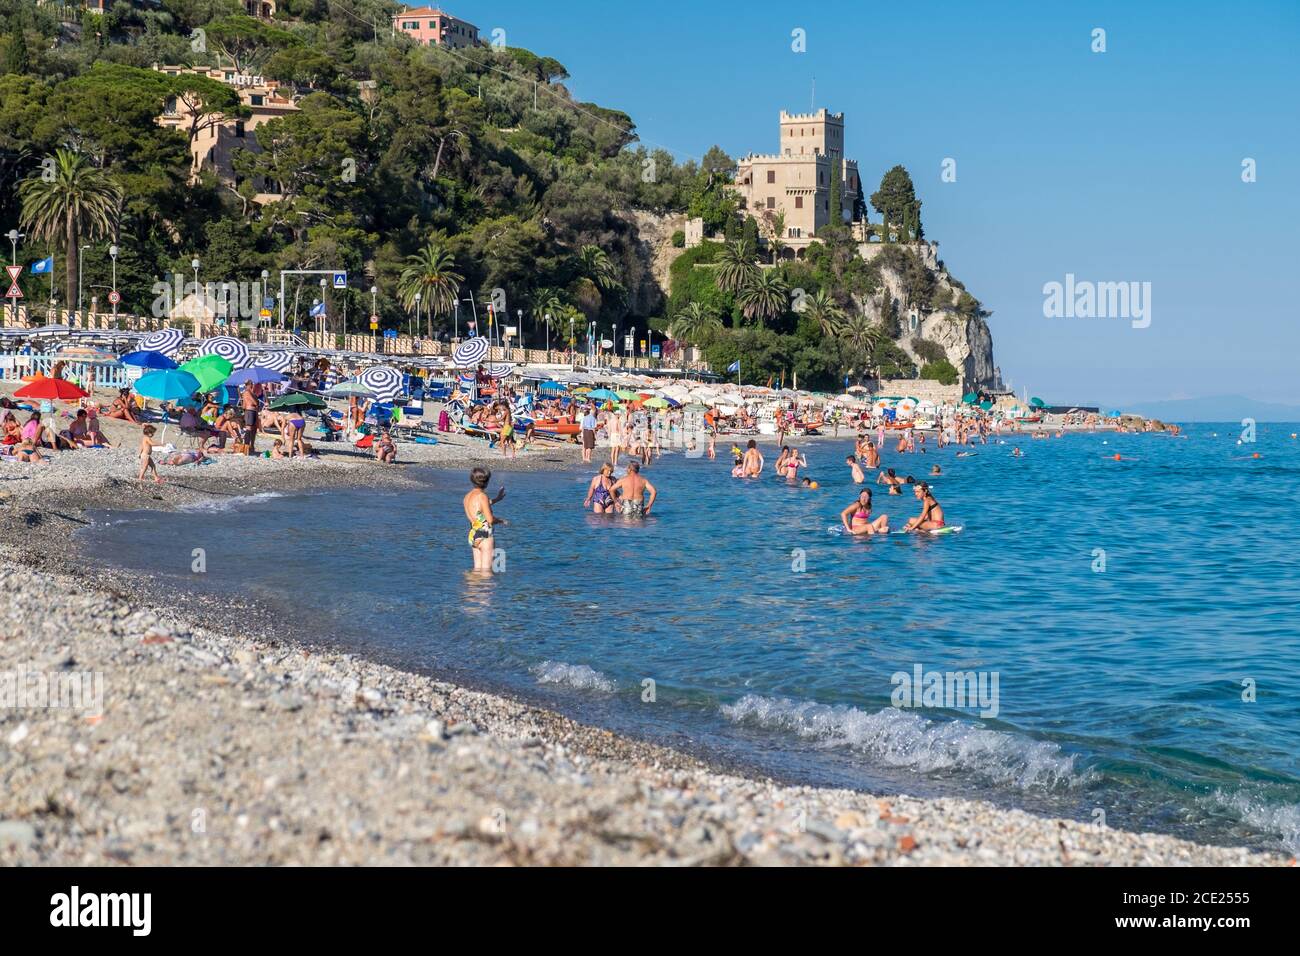 Spiaggia e persone che nuotano in mare a finale Ligure, Liguria, Italia Foto Stock